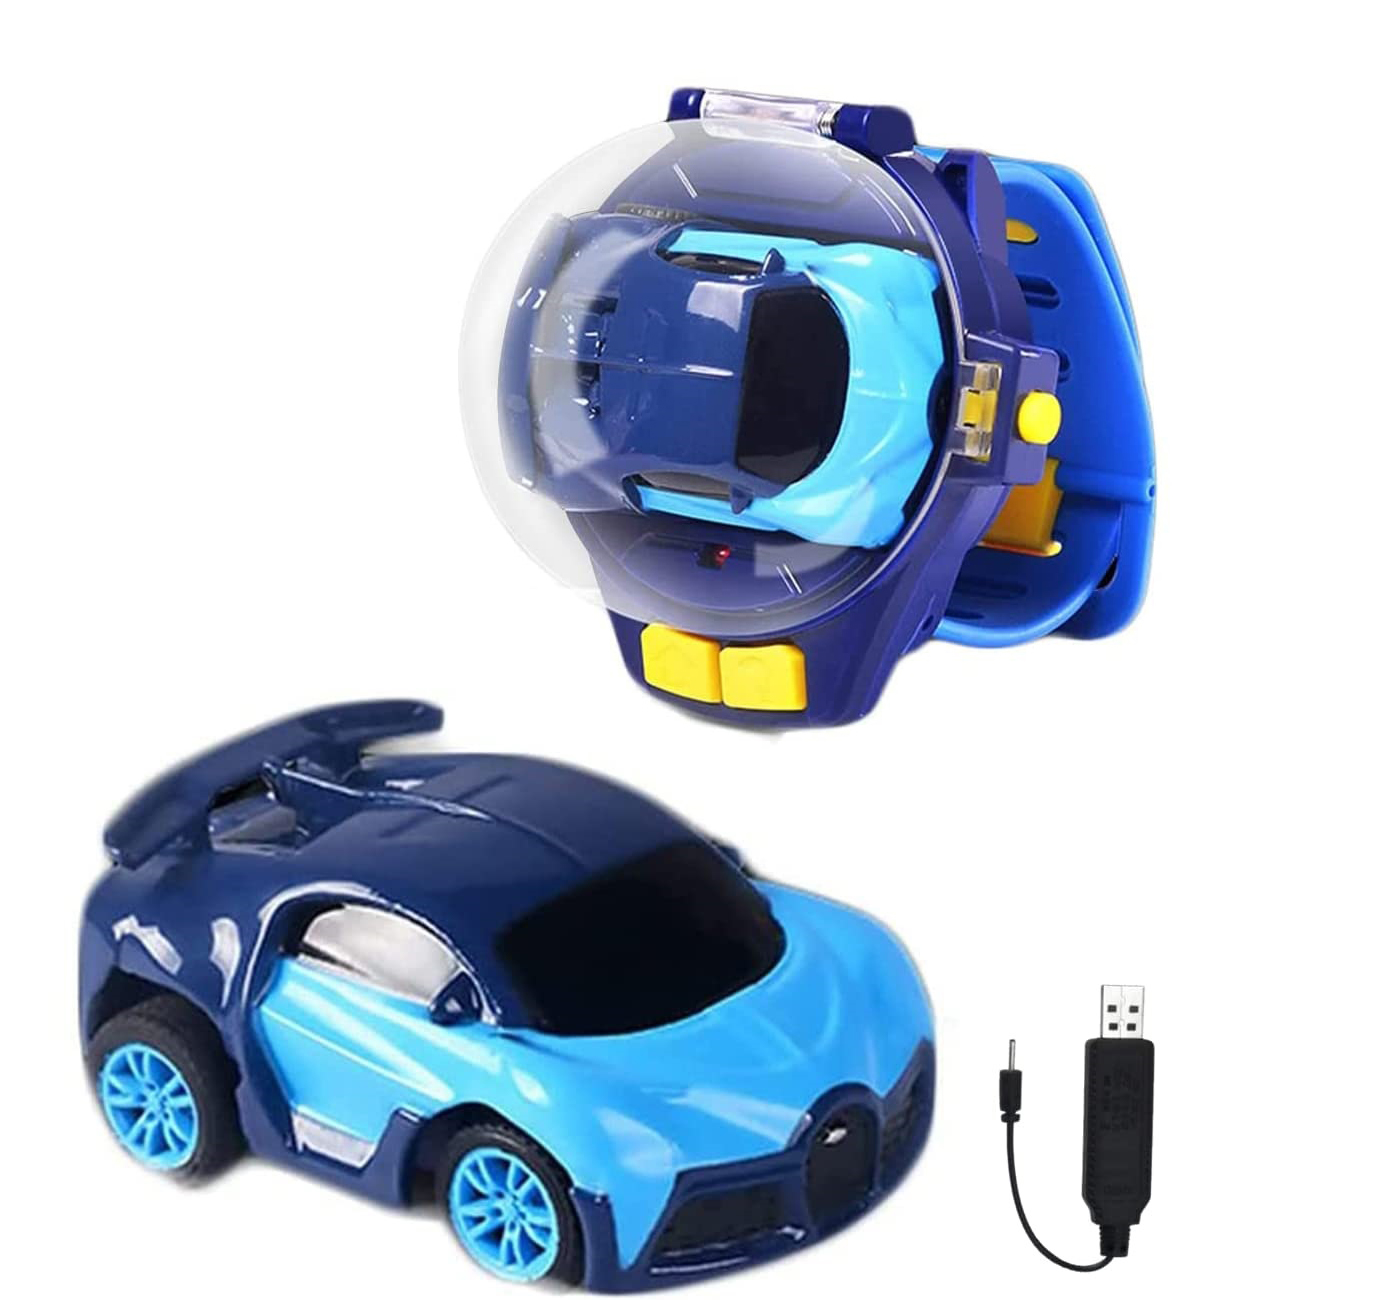 Masina cu Telecomanda in Ceas LIKESMART Mini Watch Remote Car, 30M, Incarcare rapida, Albastru